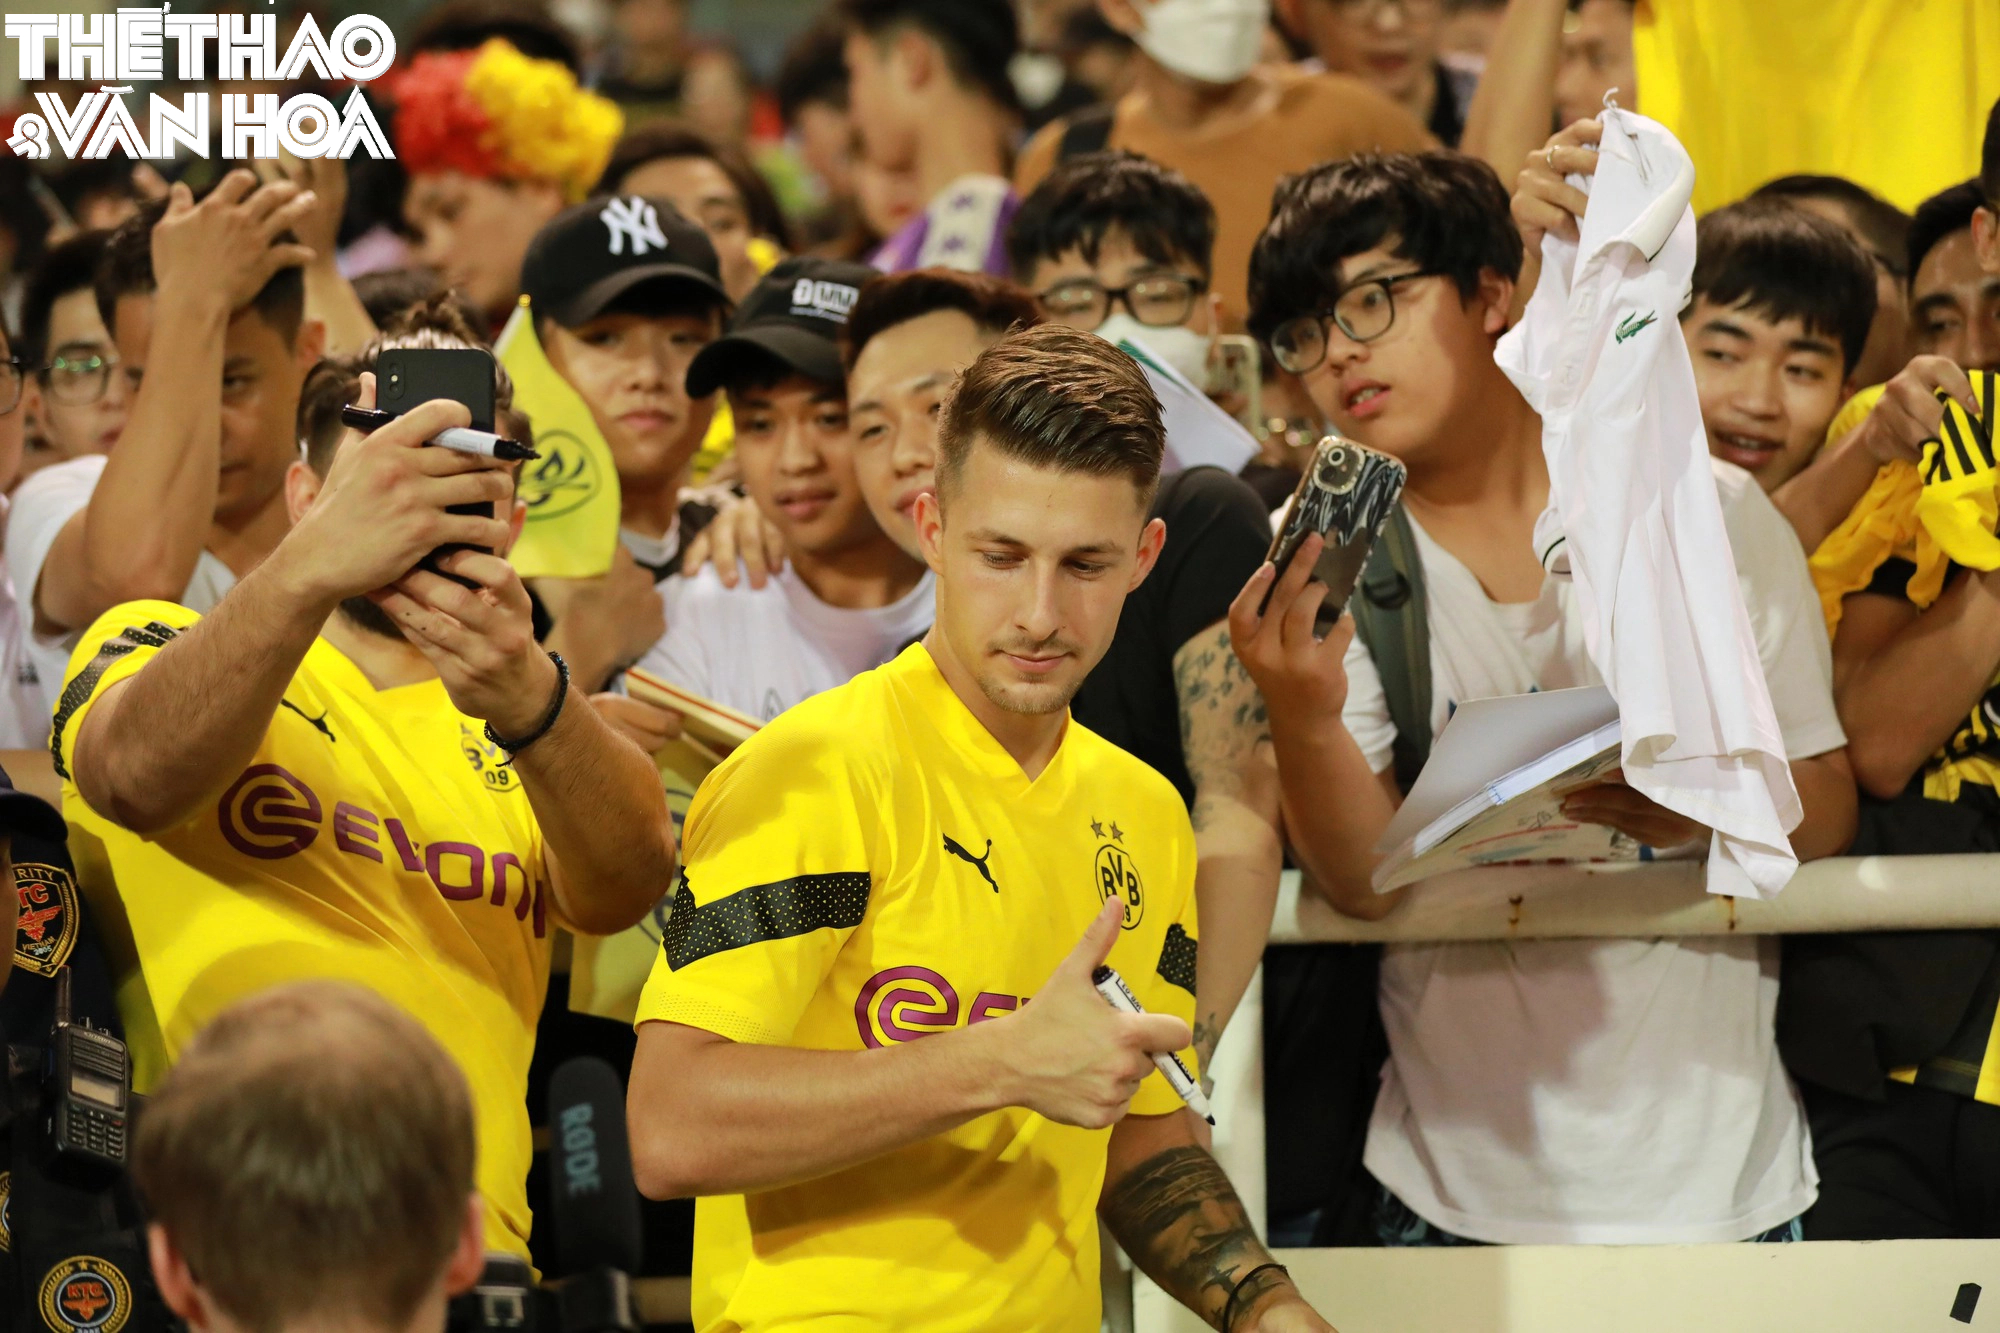 Cầu thủ Dortmund cực điển trai trong buổi giao lưu kí tặng CĐV  - Ảnh 19.